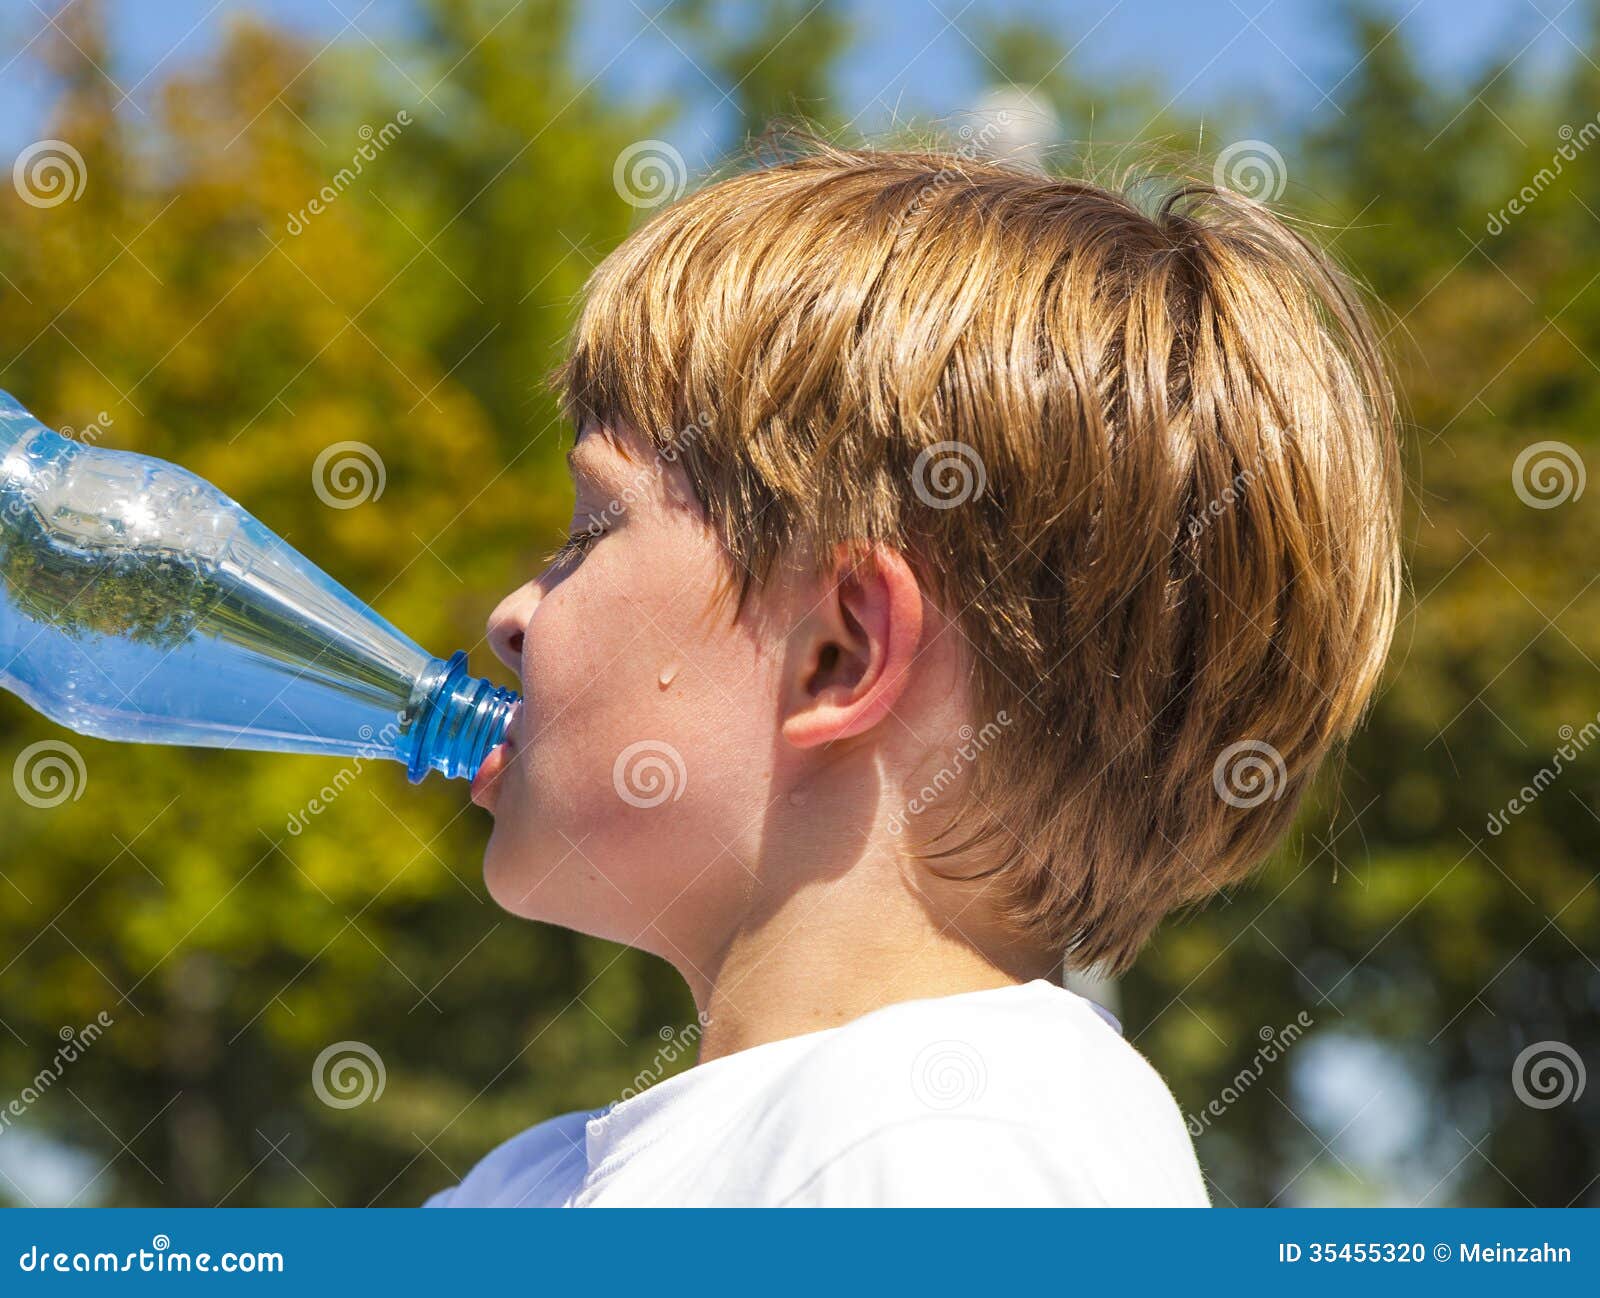 Вода которую мальчик несет. Мальчик пьет воду. Ребенок пьет воду из бутылки. Бутыли с водой в парке. Мальчик пьёт из бутылки Лорен.